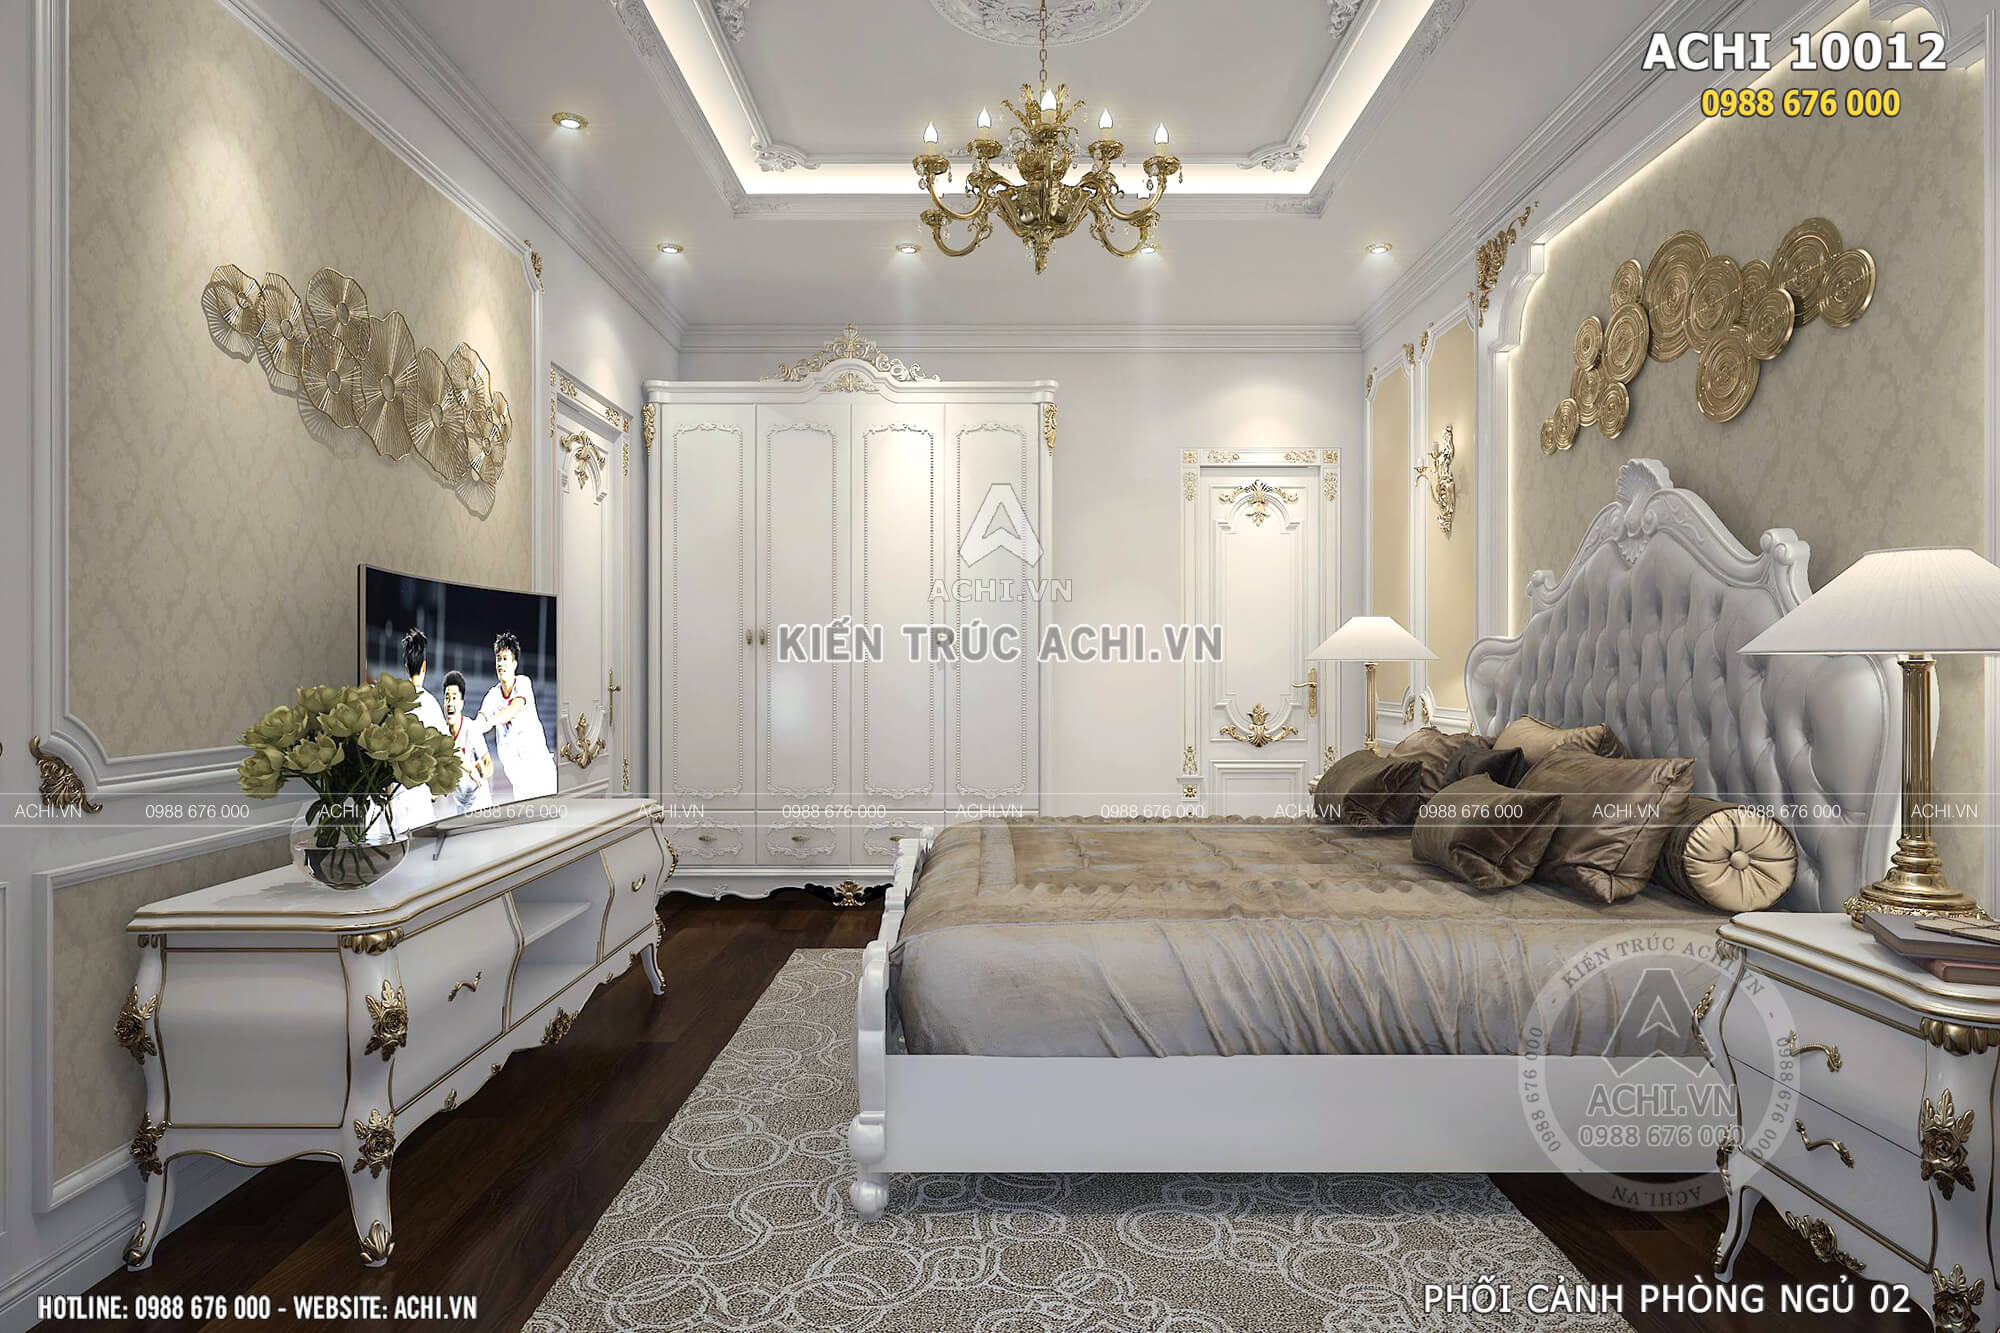 Mẫu thiết kế phòng ngủ với nội thất tân cổ điển kiểu dáng sang trọng và độc đáo